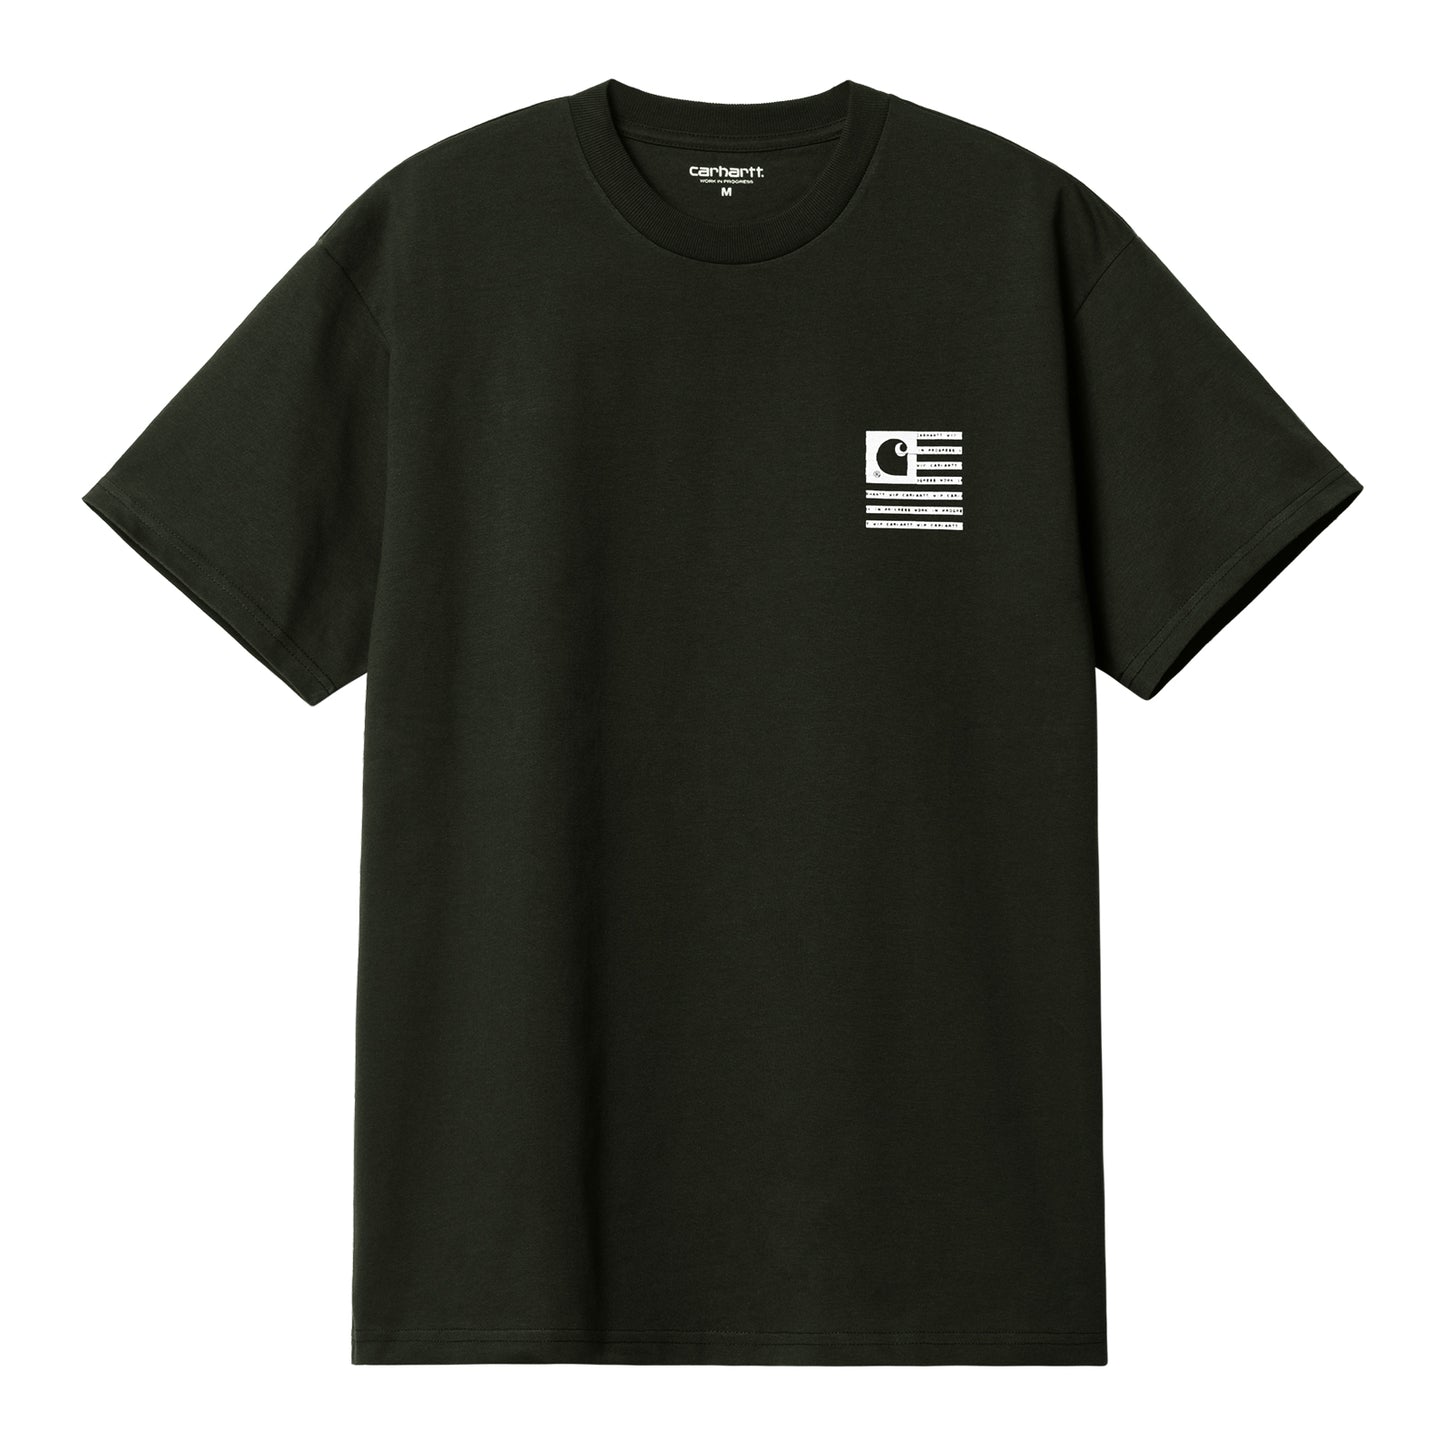 Carhartt WIP Label State Flag T-Shirt Dark Cedar/White. Foto da parte da frente.